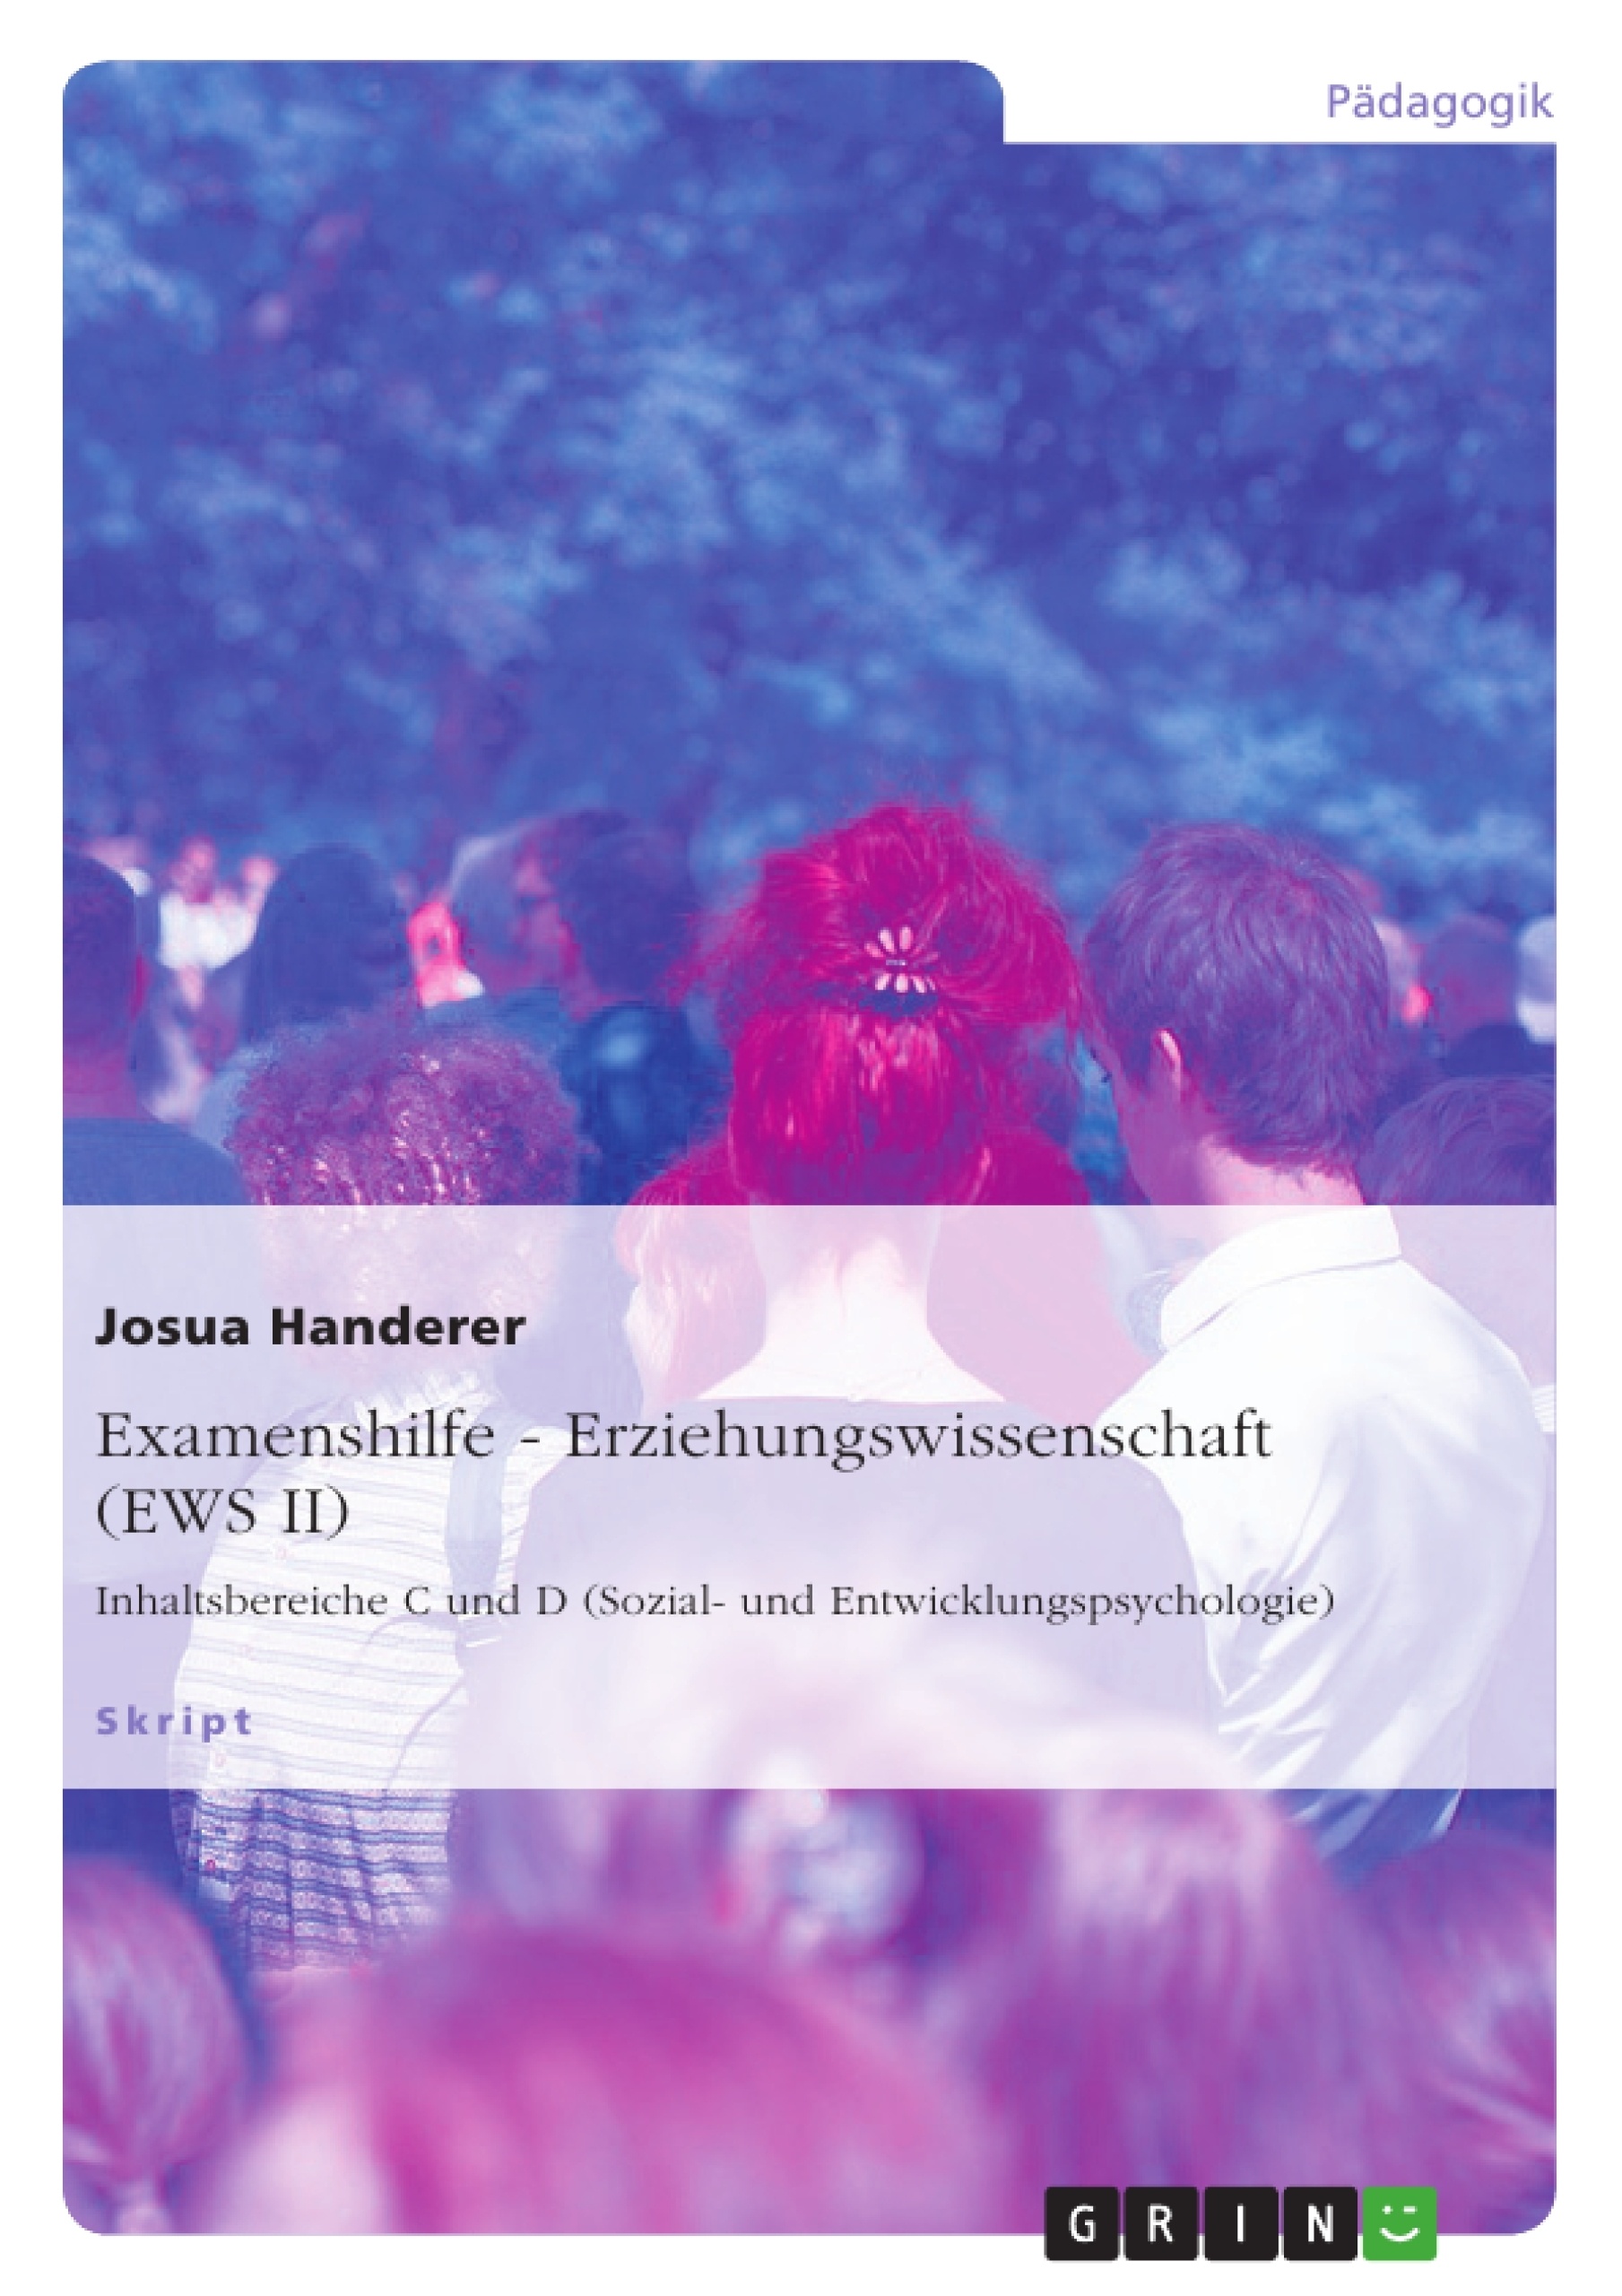 Title: Examenshilfe - Erziehungswissenschaft (EWS II)